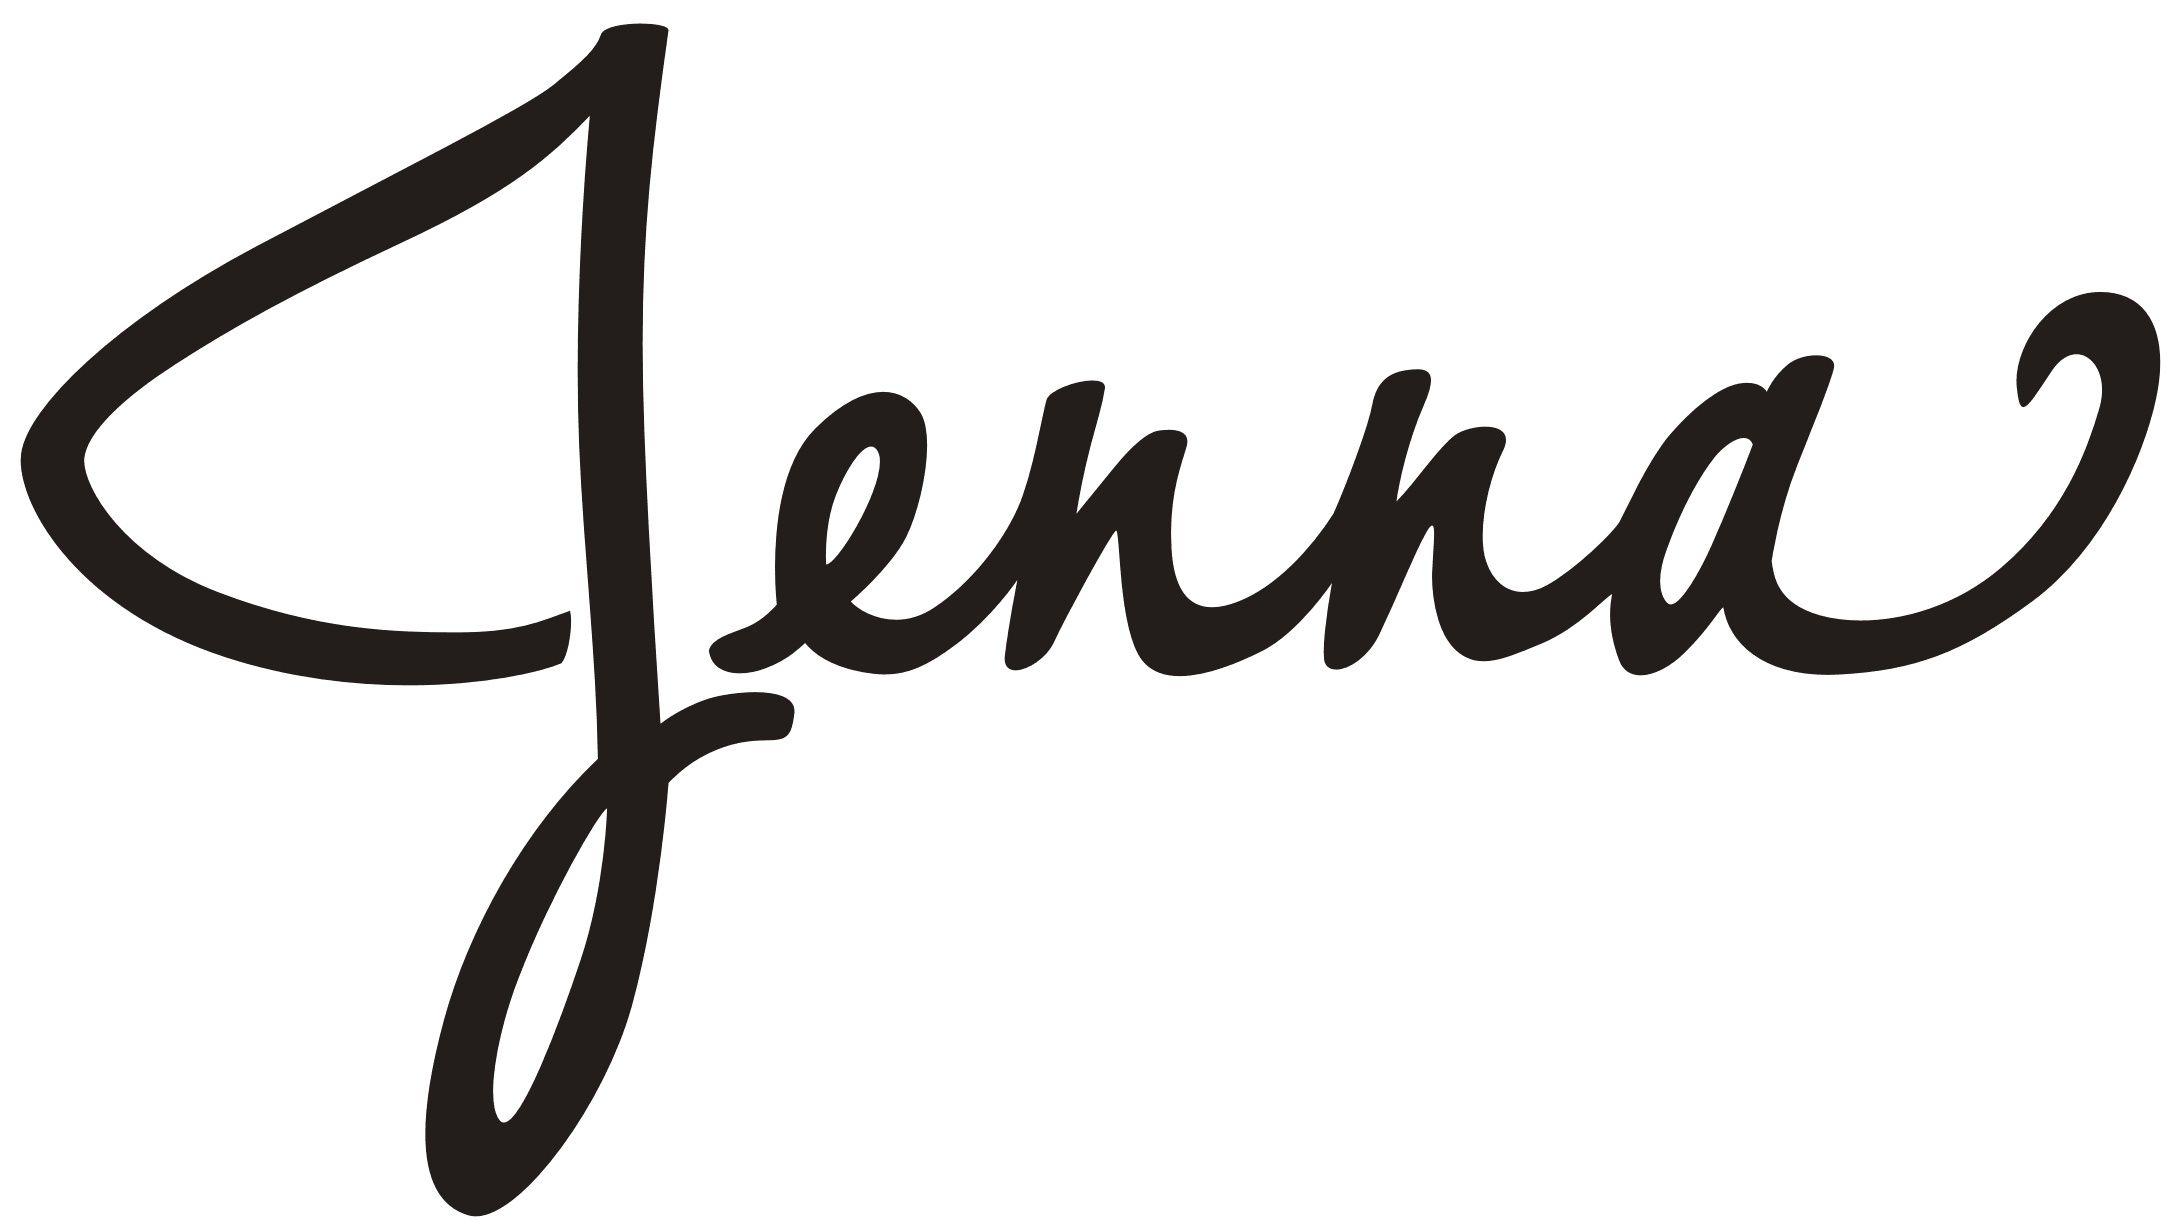 Jenna Logo - Logo Design, Log Cabin Inn